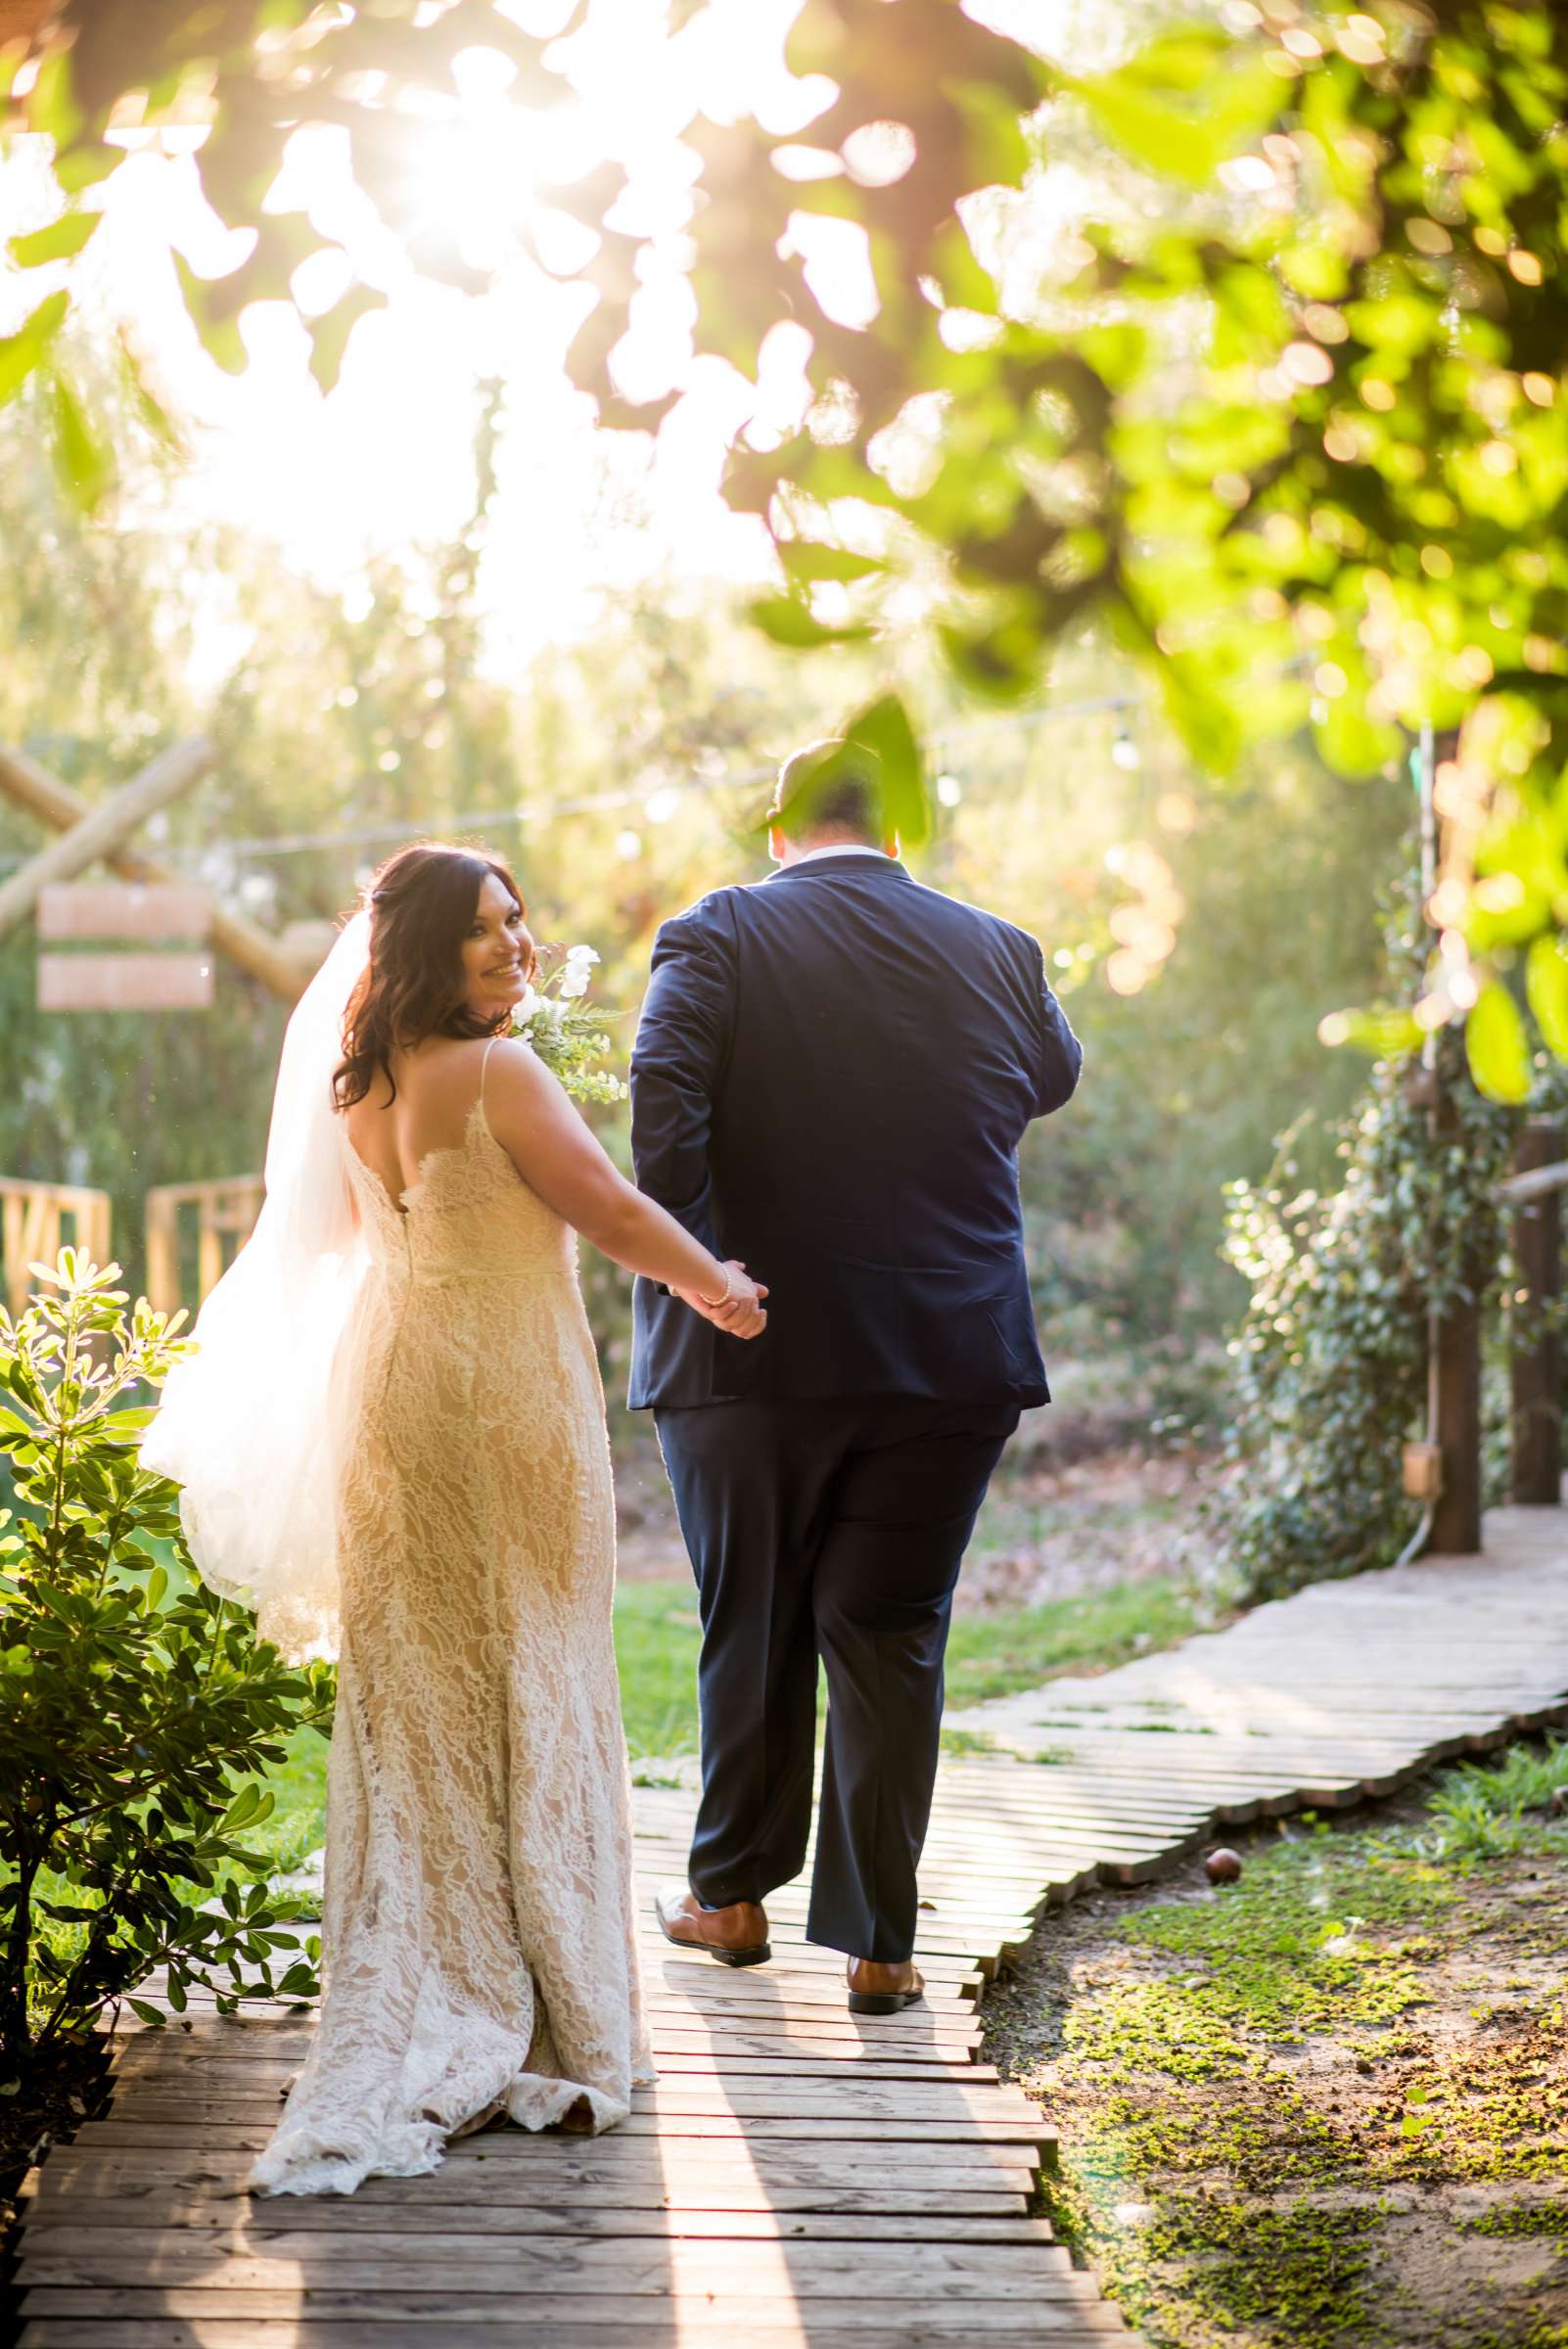 Ethereal Gardens Wedding, Lauren and Benjamin Wedding Photo #446509 by True Photography